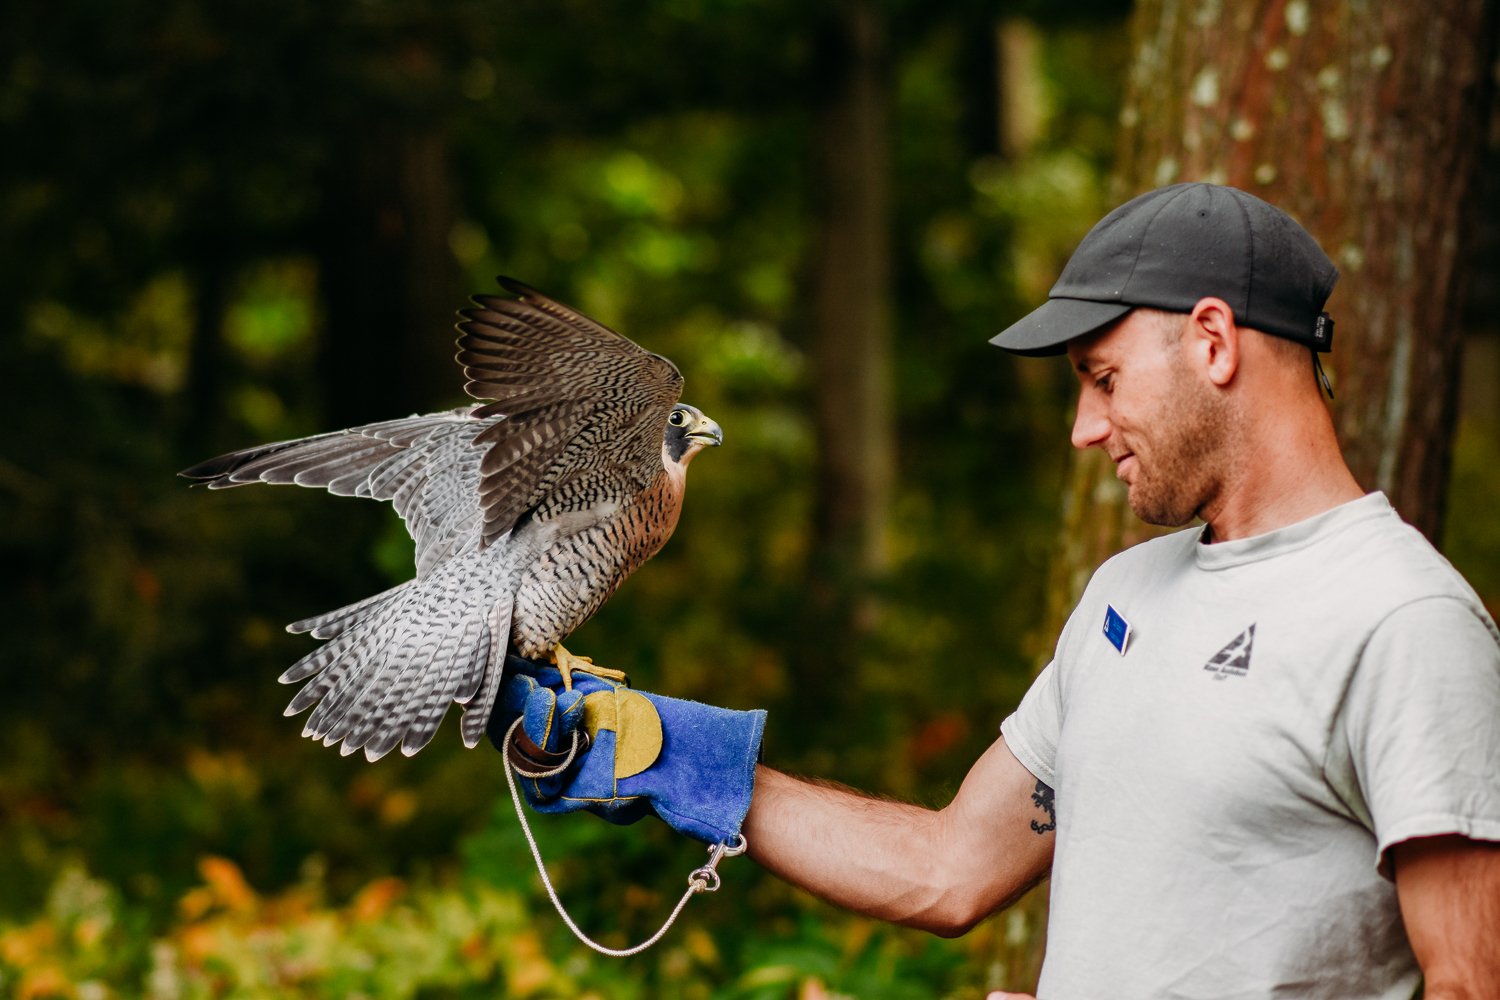 Man with a gray Mass Audubon shirt and blue glove holding a raptor.